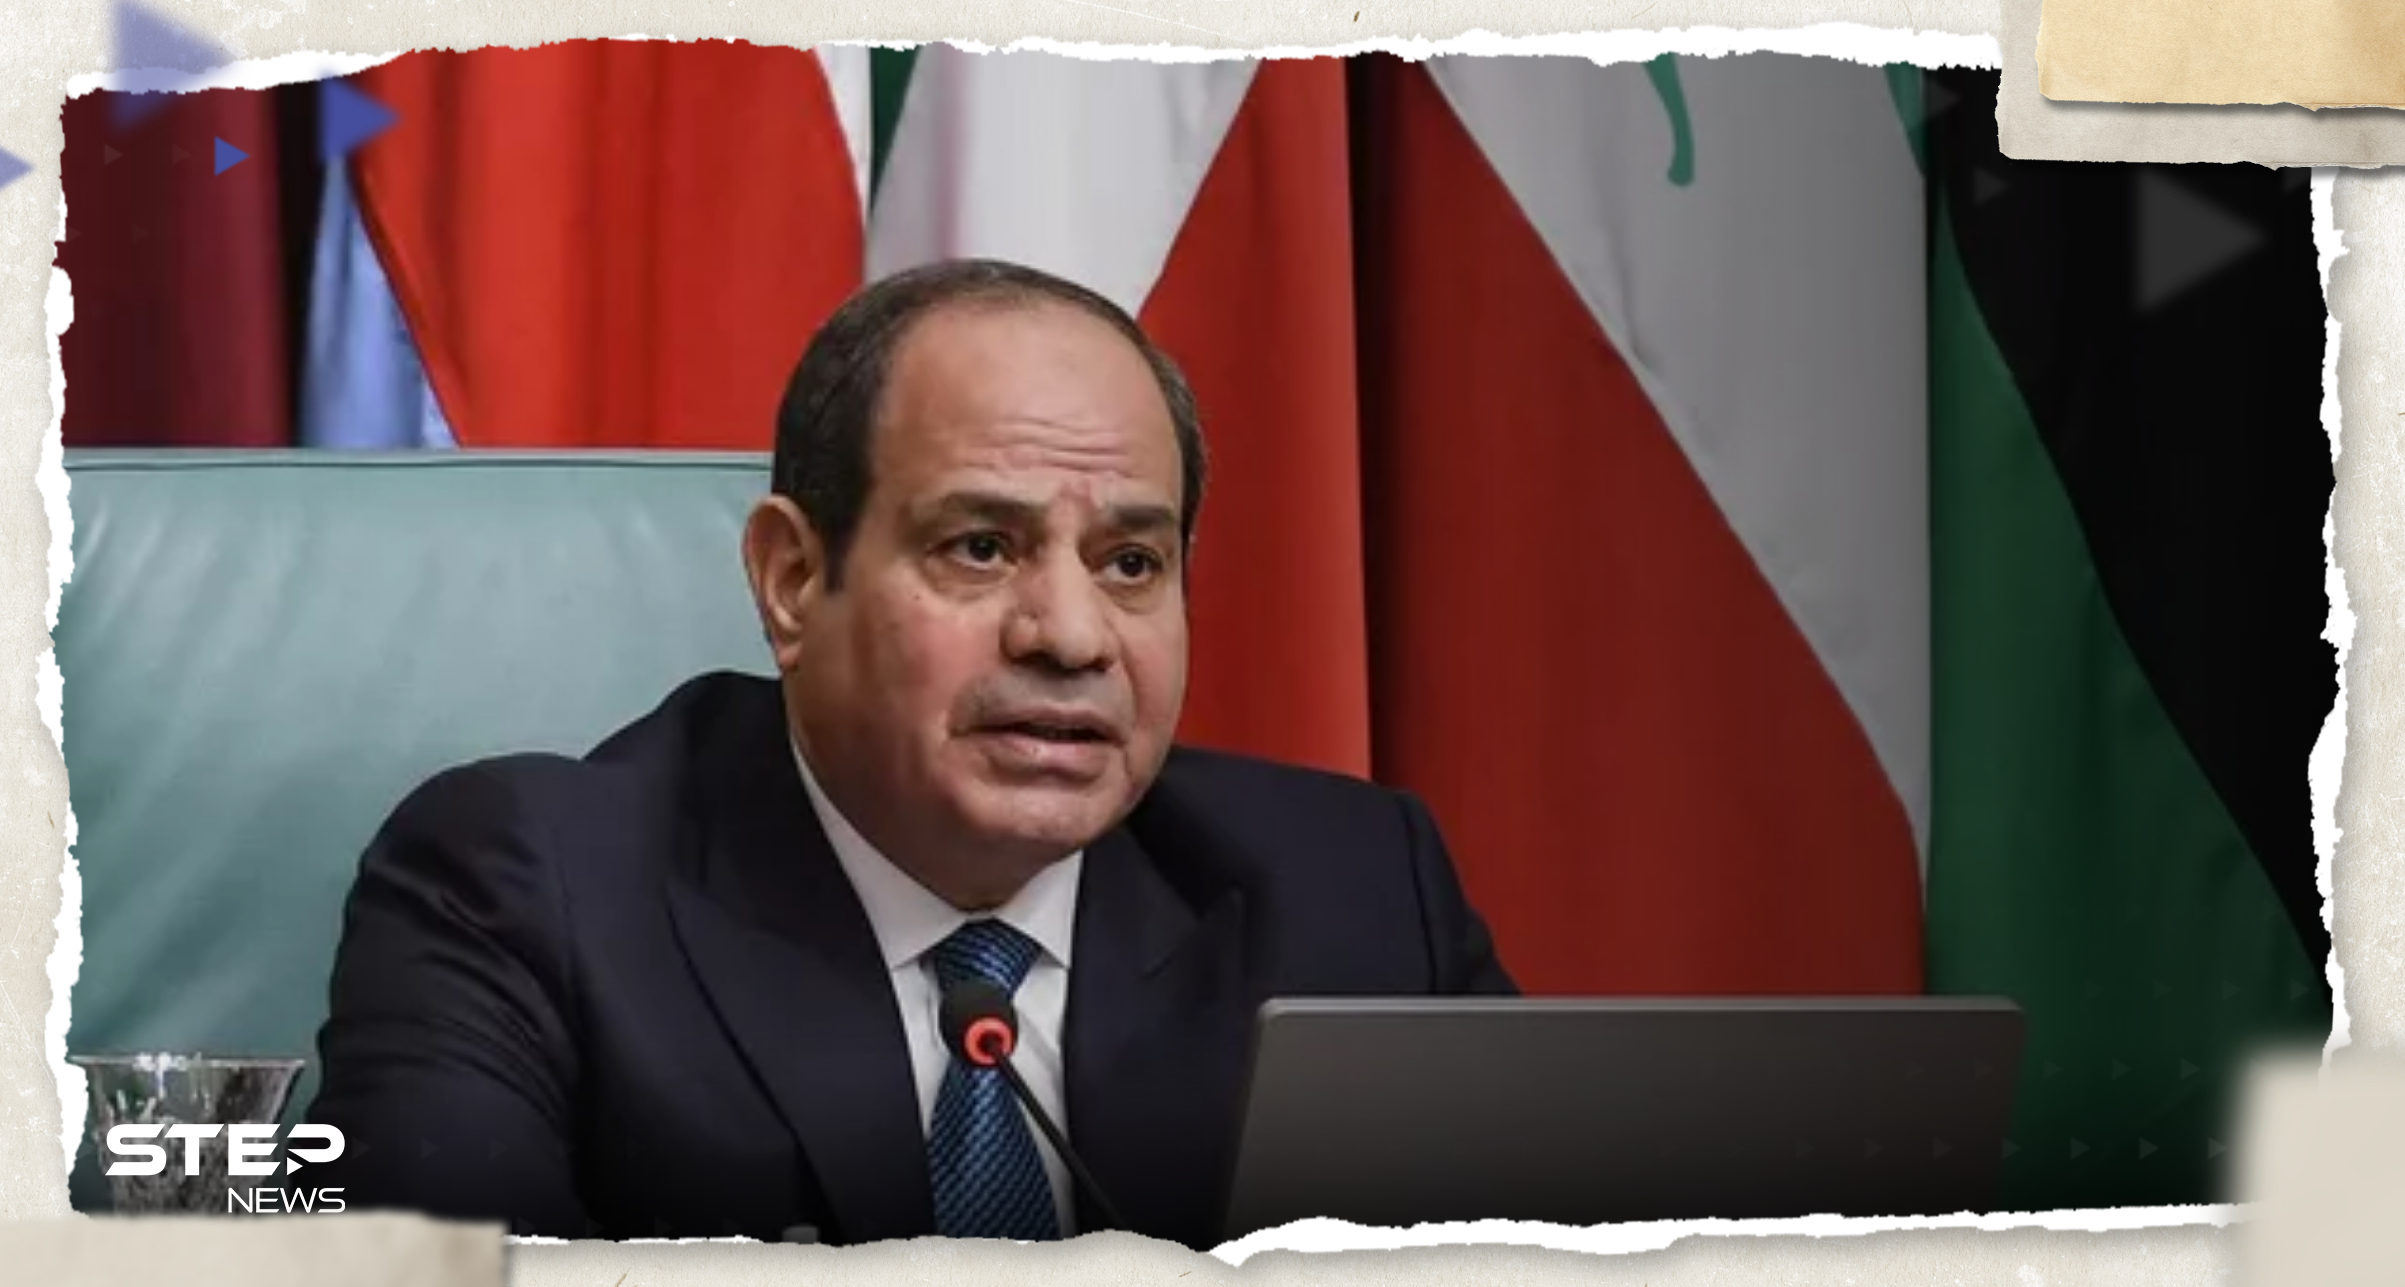 الرئيس المصري يطرح أهدافاً تنموية للقارة الأفريقية على مجموعة العشرين 